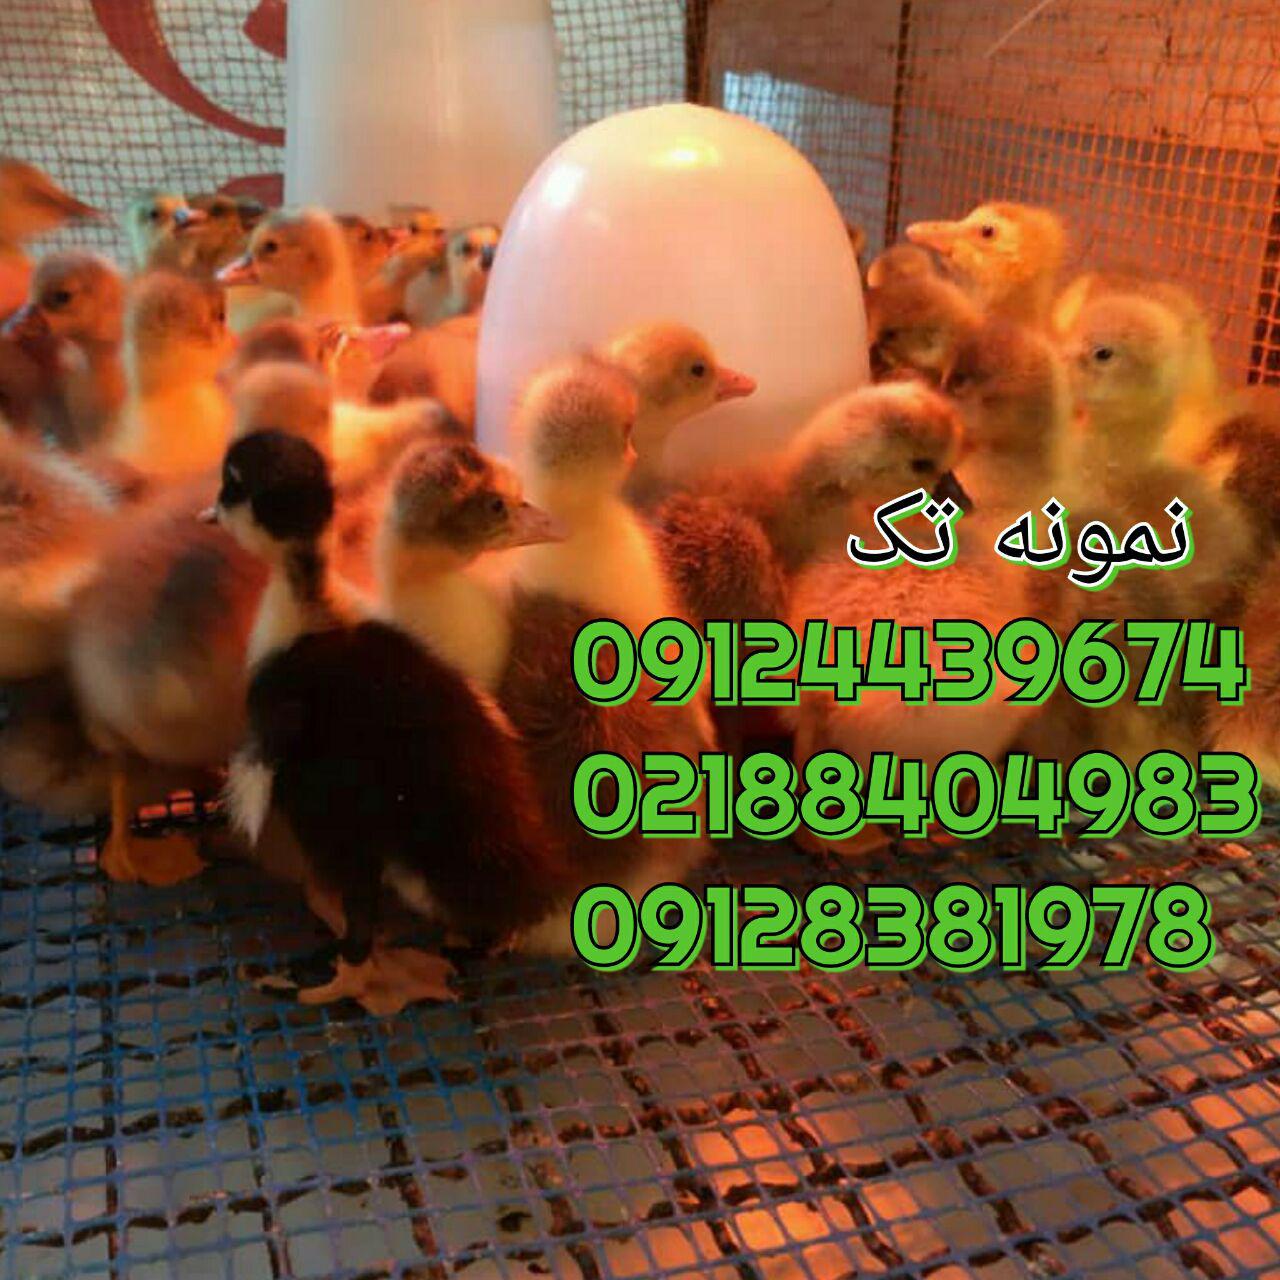 فروش اردک یک ماهه 09128381978 09131392838 09121393868 خرید اردگ پکنی یکماه 091324496359